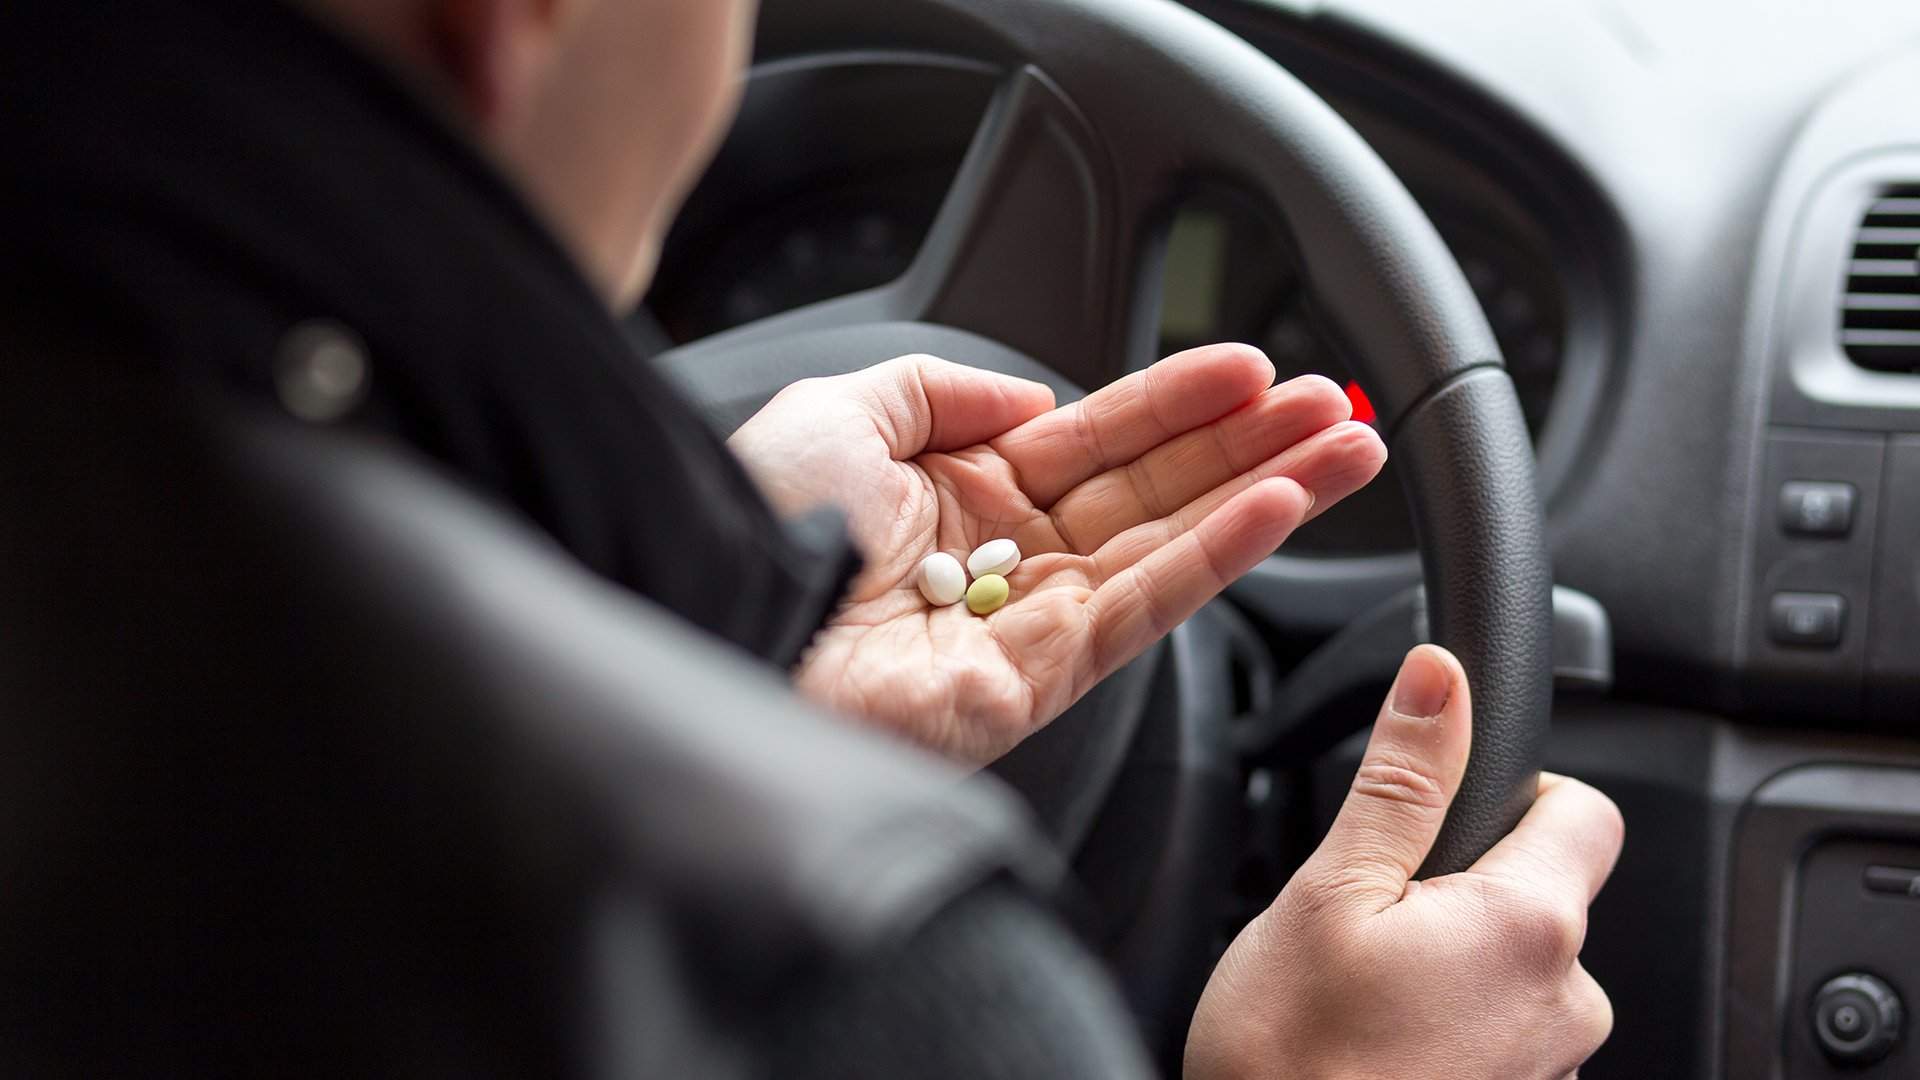 Важно выяснить у врача, есть ли у назначенного им лекарства побочные эффекты, можно ли принимать его за рулем автомобиля